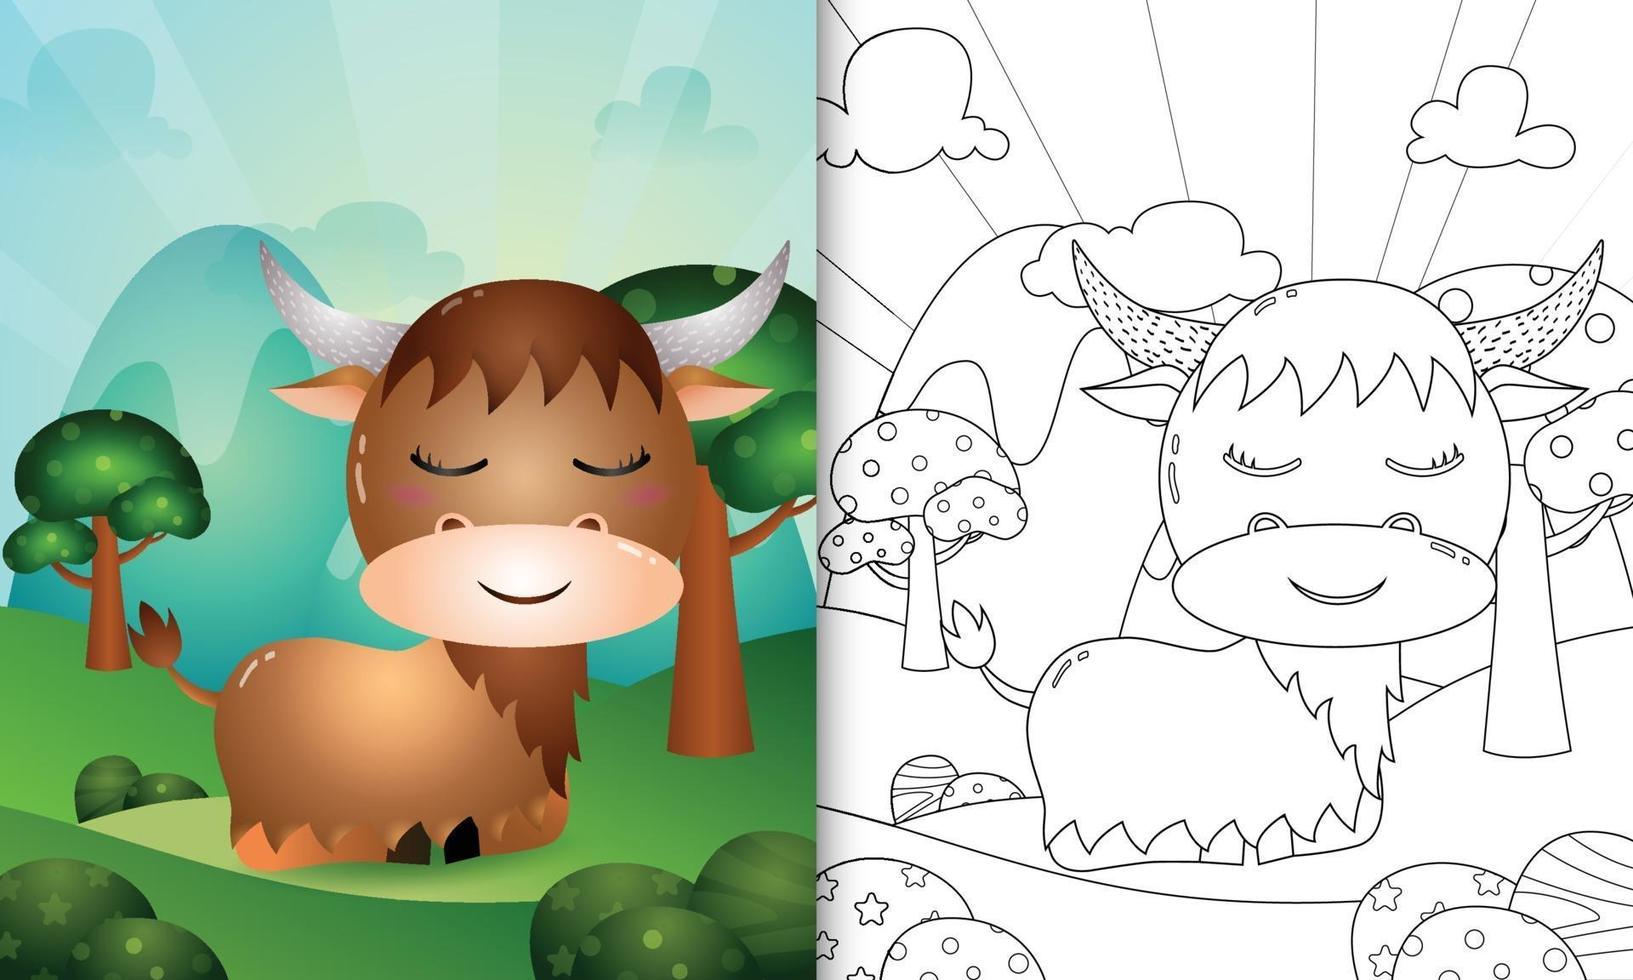 livro de colorir para crianças com uma ilustração de um búfalo fofo vetor